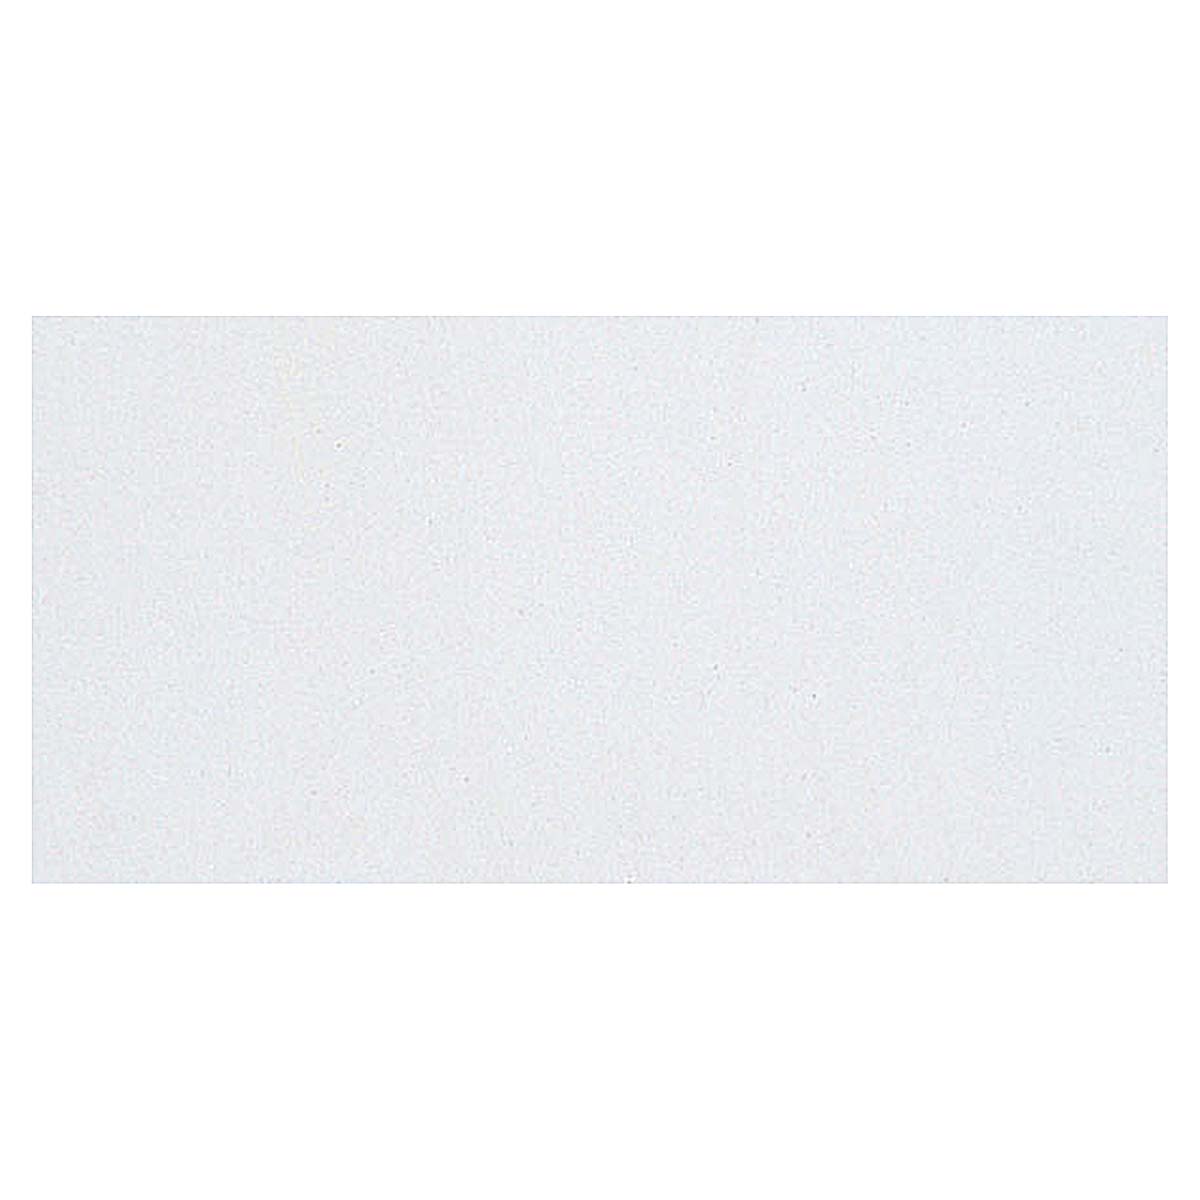 Crayola Washable Paint, 16 oz, White (54-2016-053)